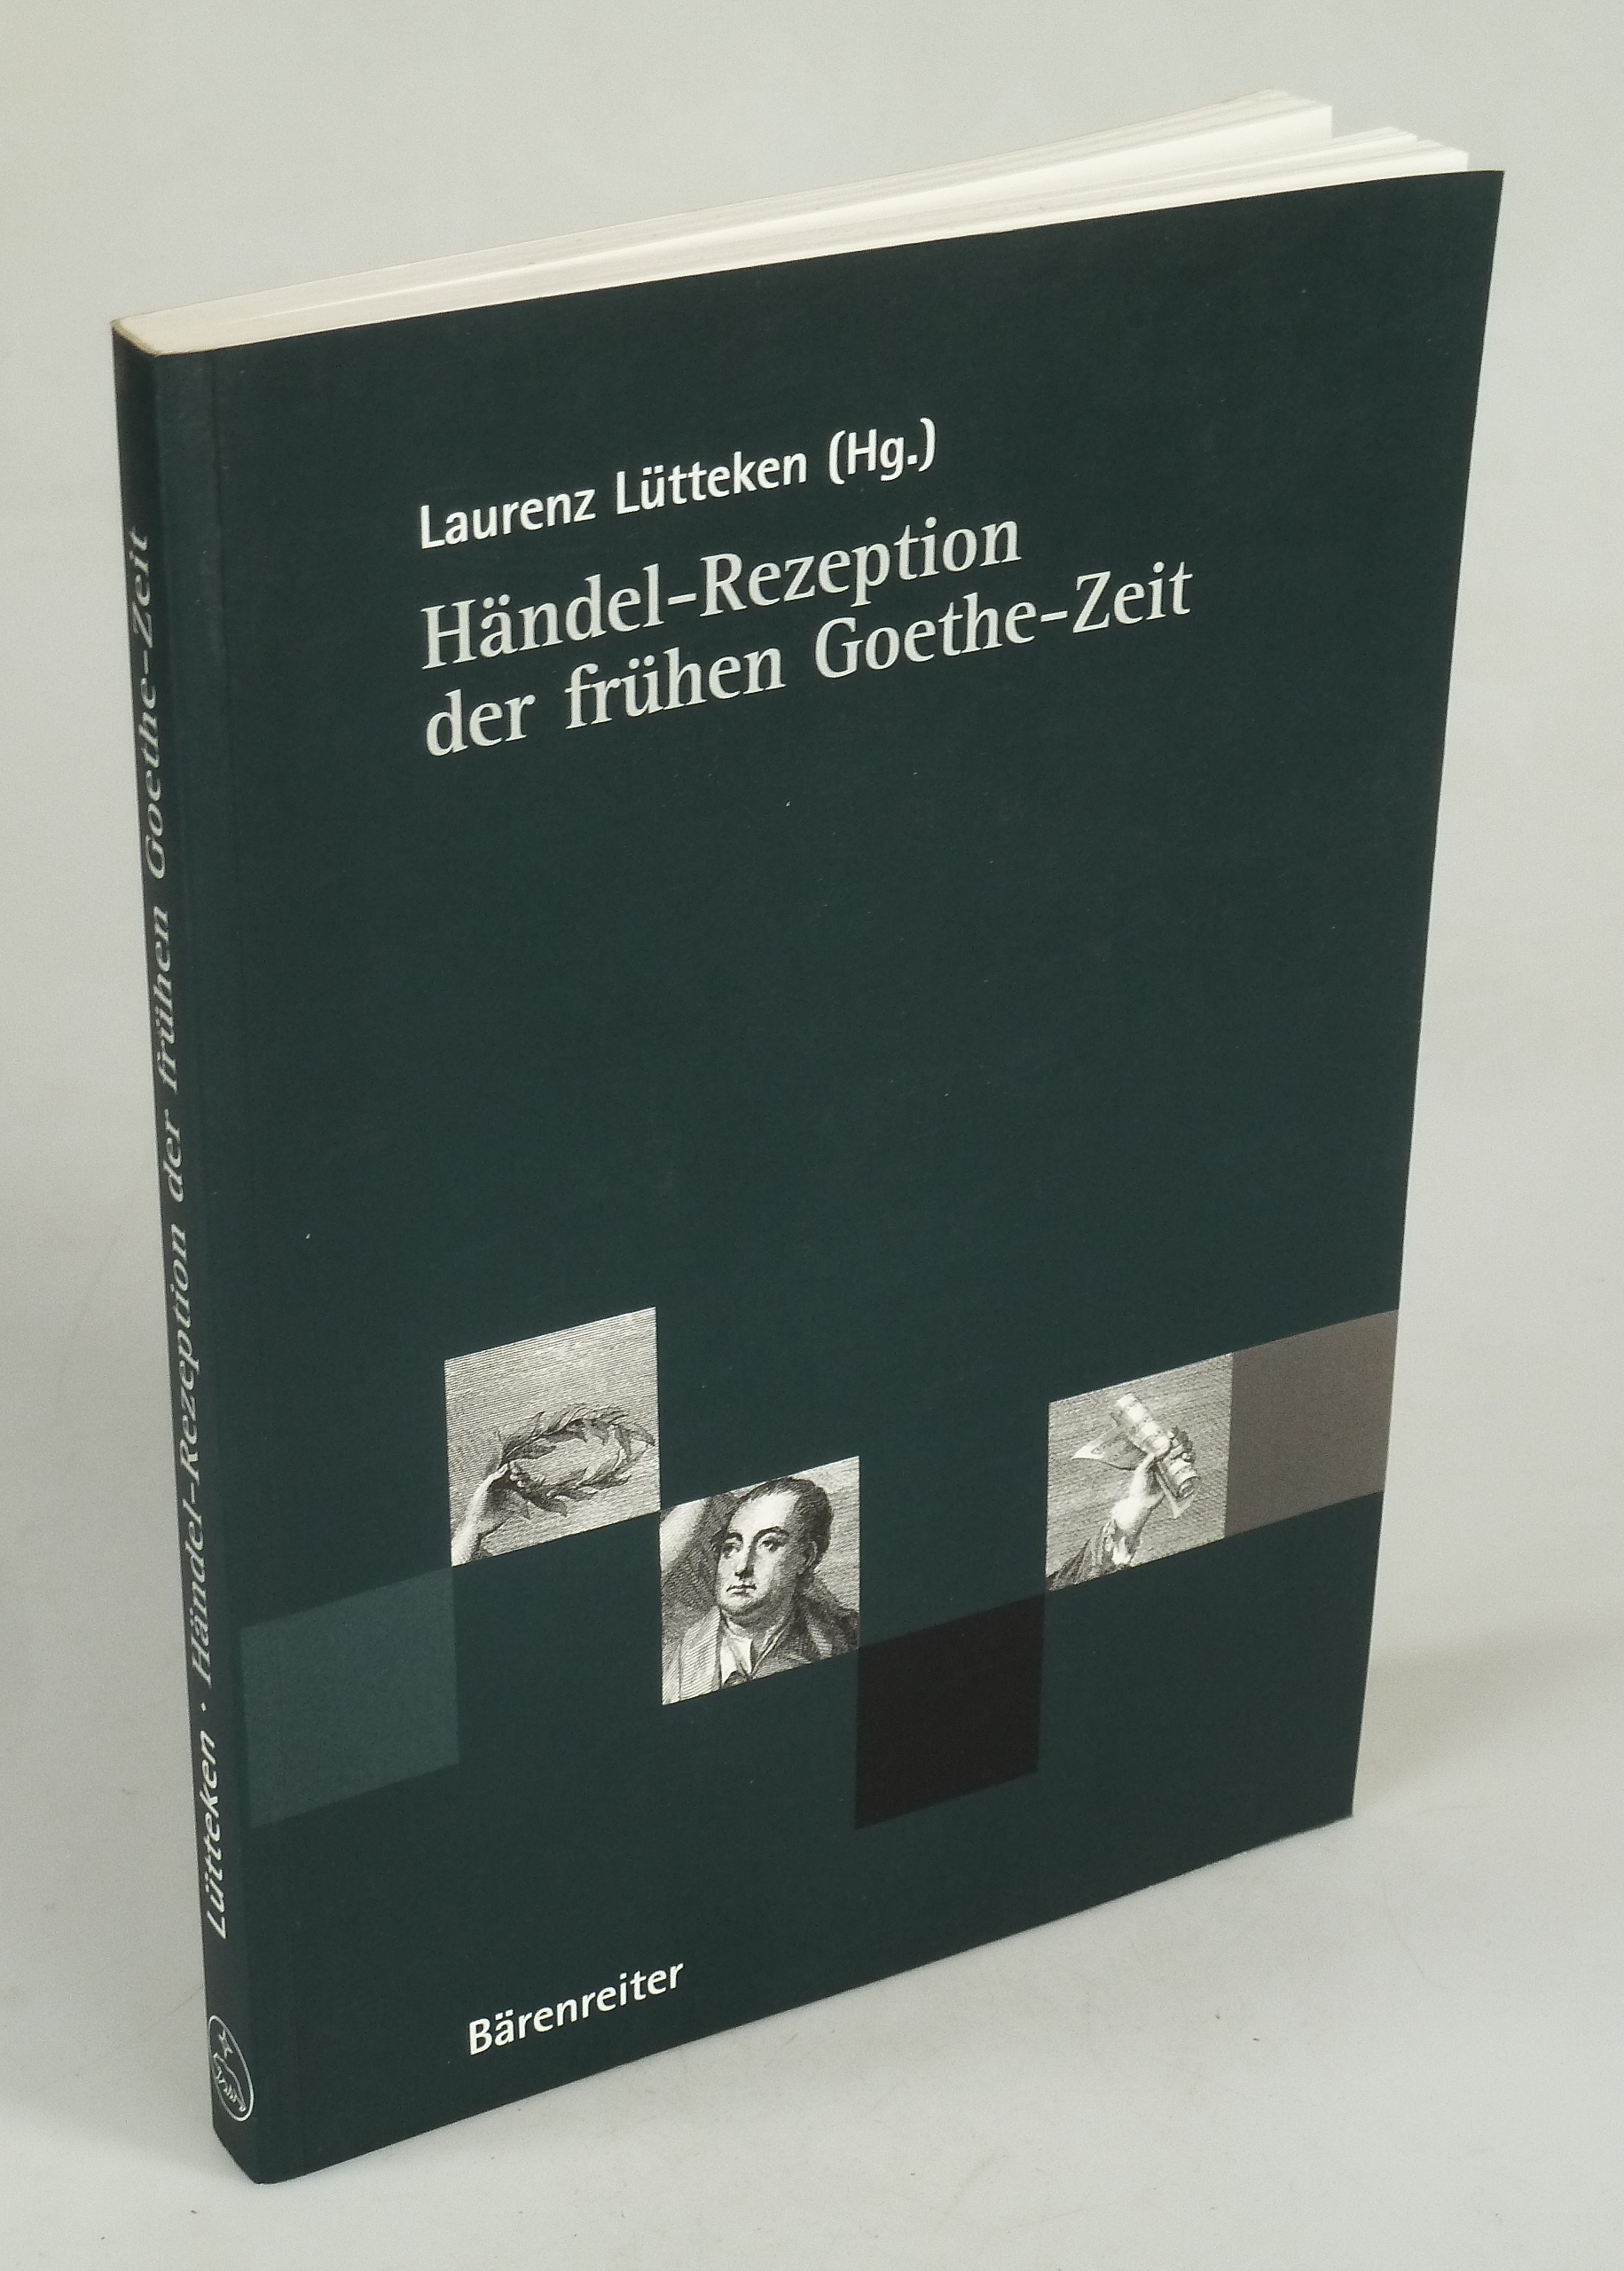 Händel-Rezeption der frühen Goethe-Zeit. - LÜTTEKEN, Laurenz (Hrsg.).